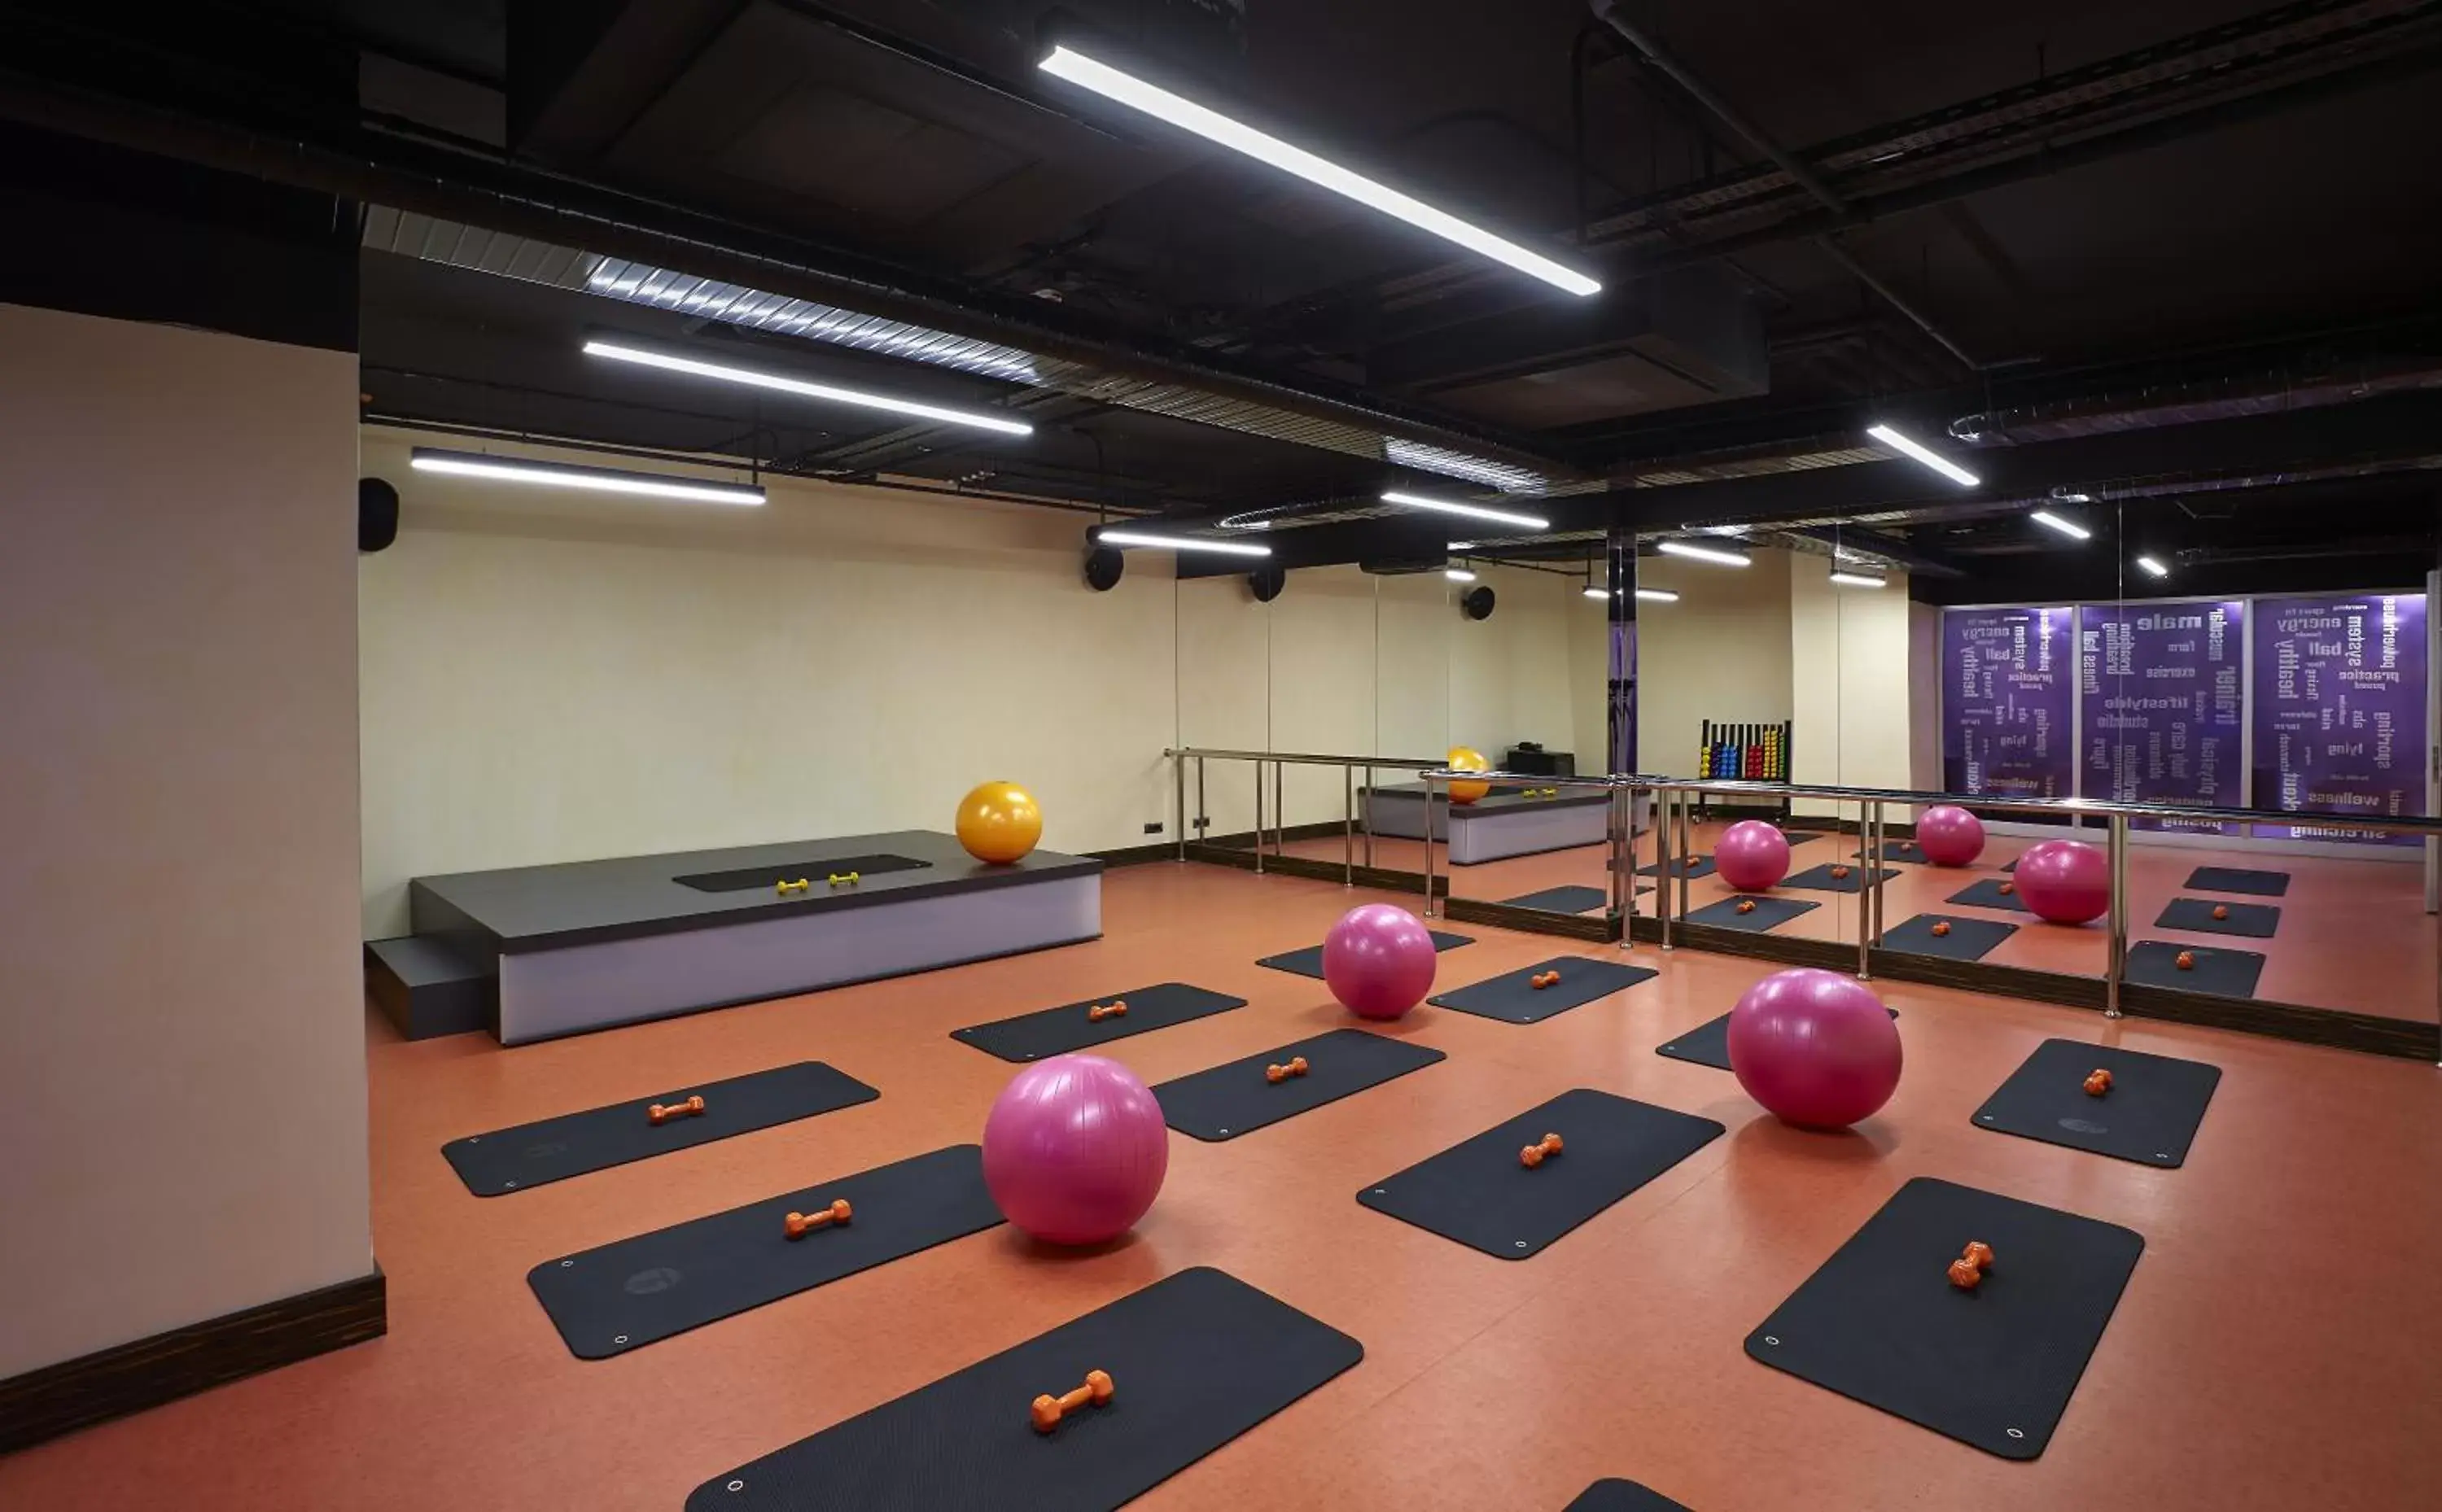 Fitness centre/facilities, Fitness Center/Facilities in Uranus Istanbul Topkapi